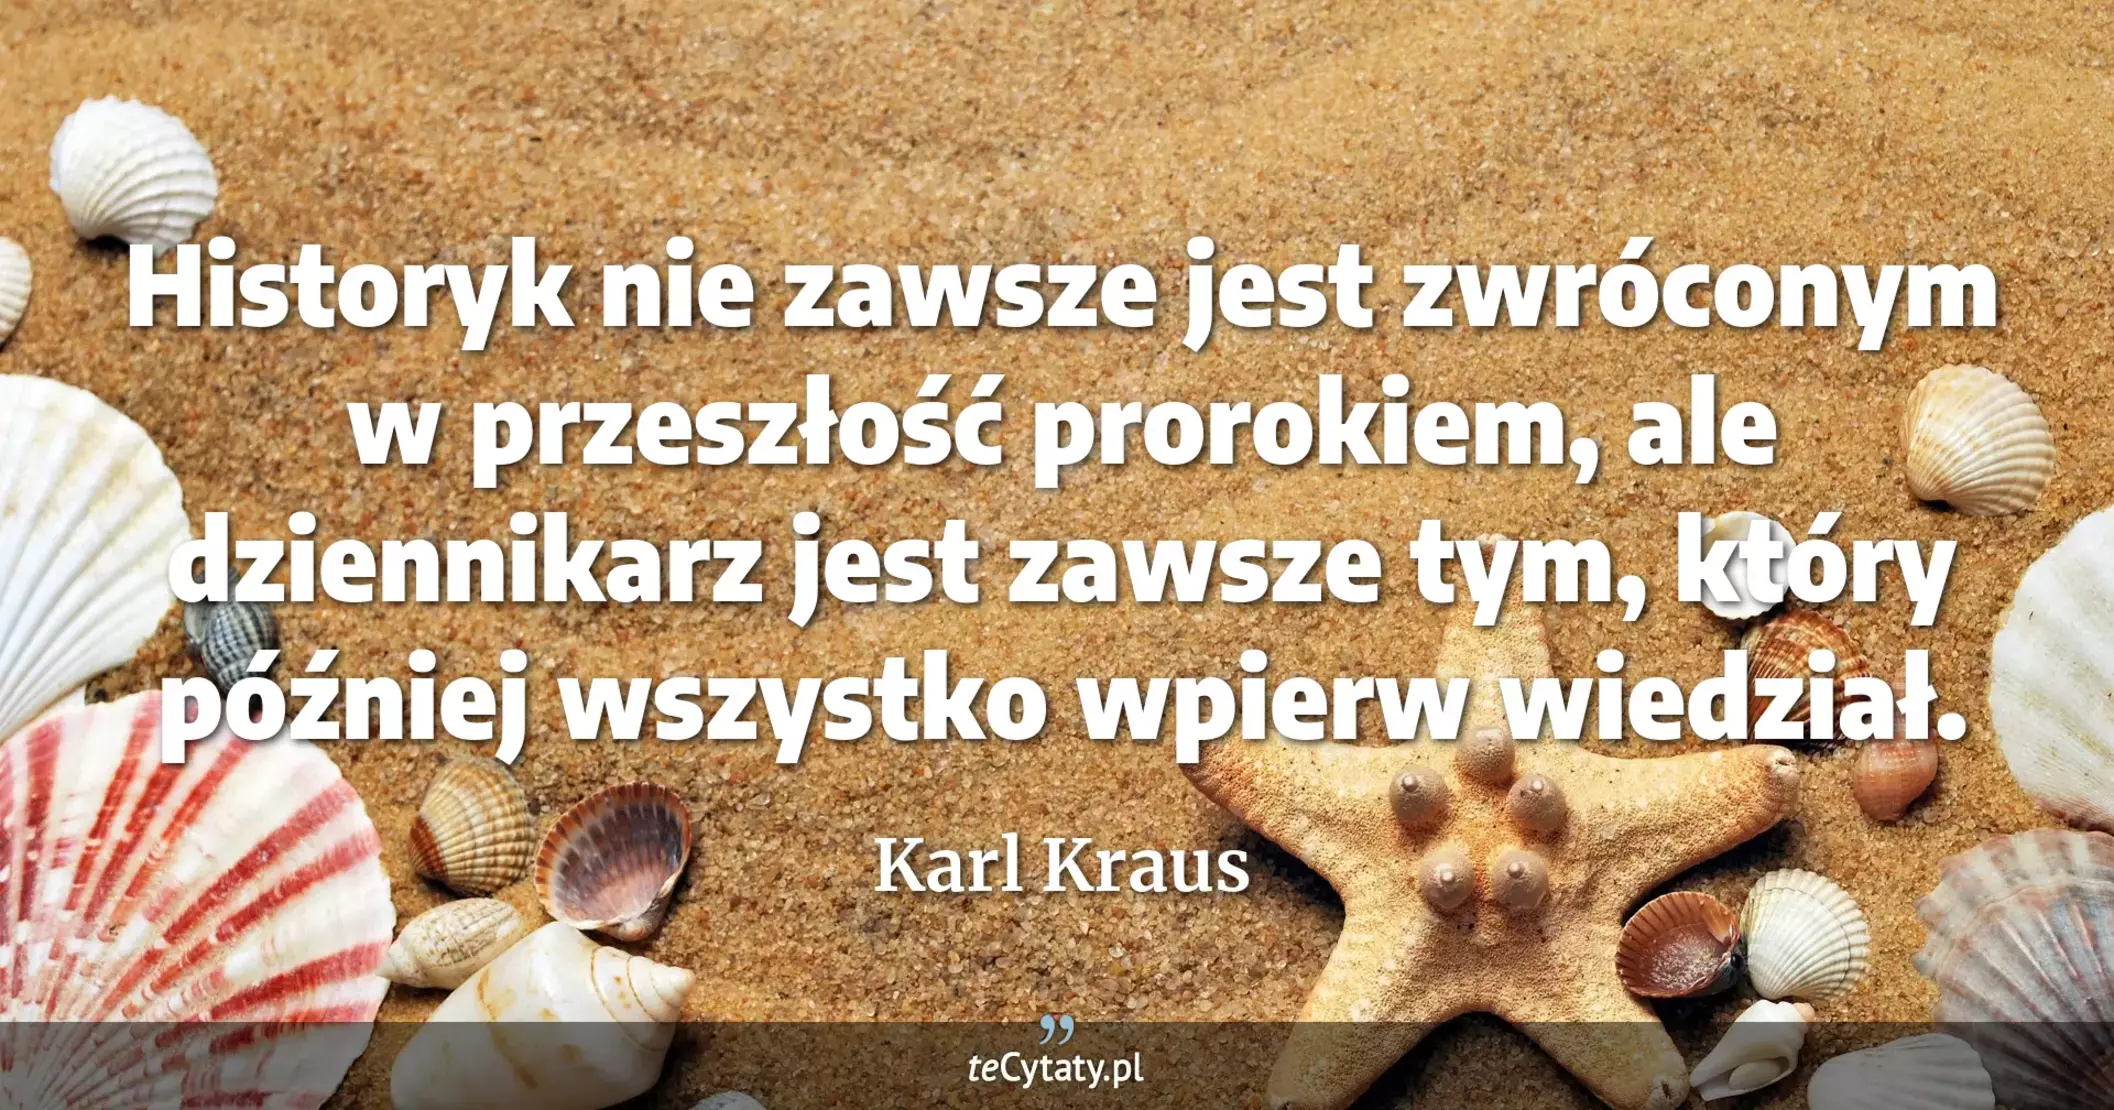 Historyk nie zawsze jest zwróconym w przeszłość prorokiem, ale dziennikarz jest zawsze tym, który później wszystko wpierw wiedział. - Karl Kraus